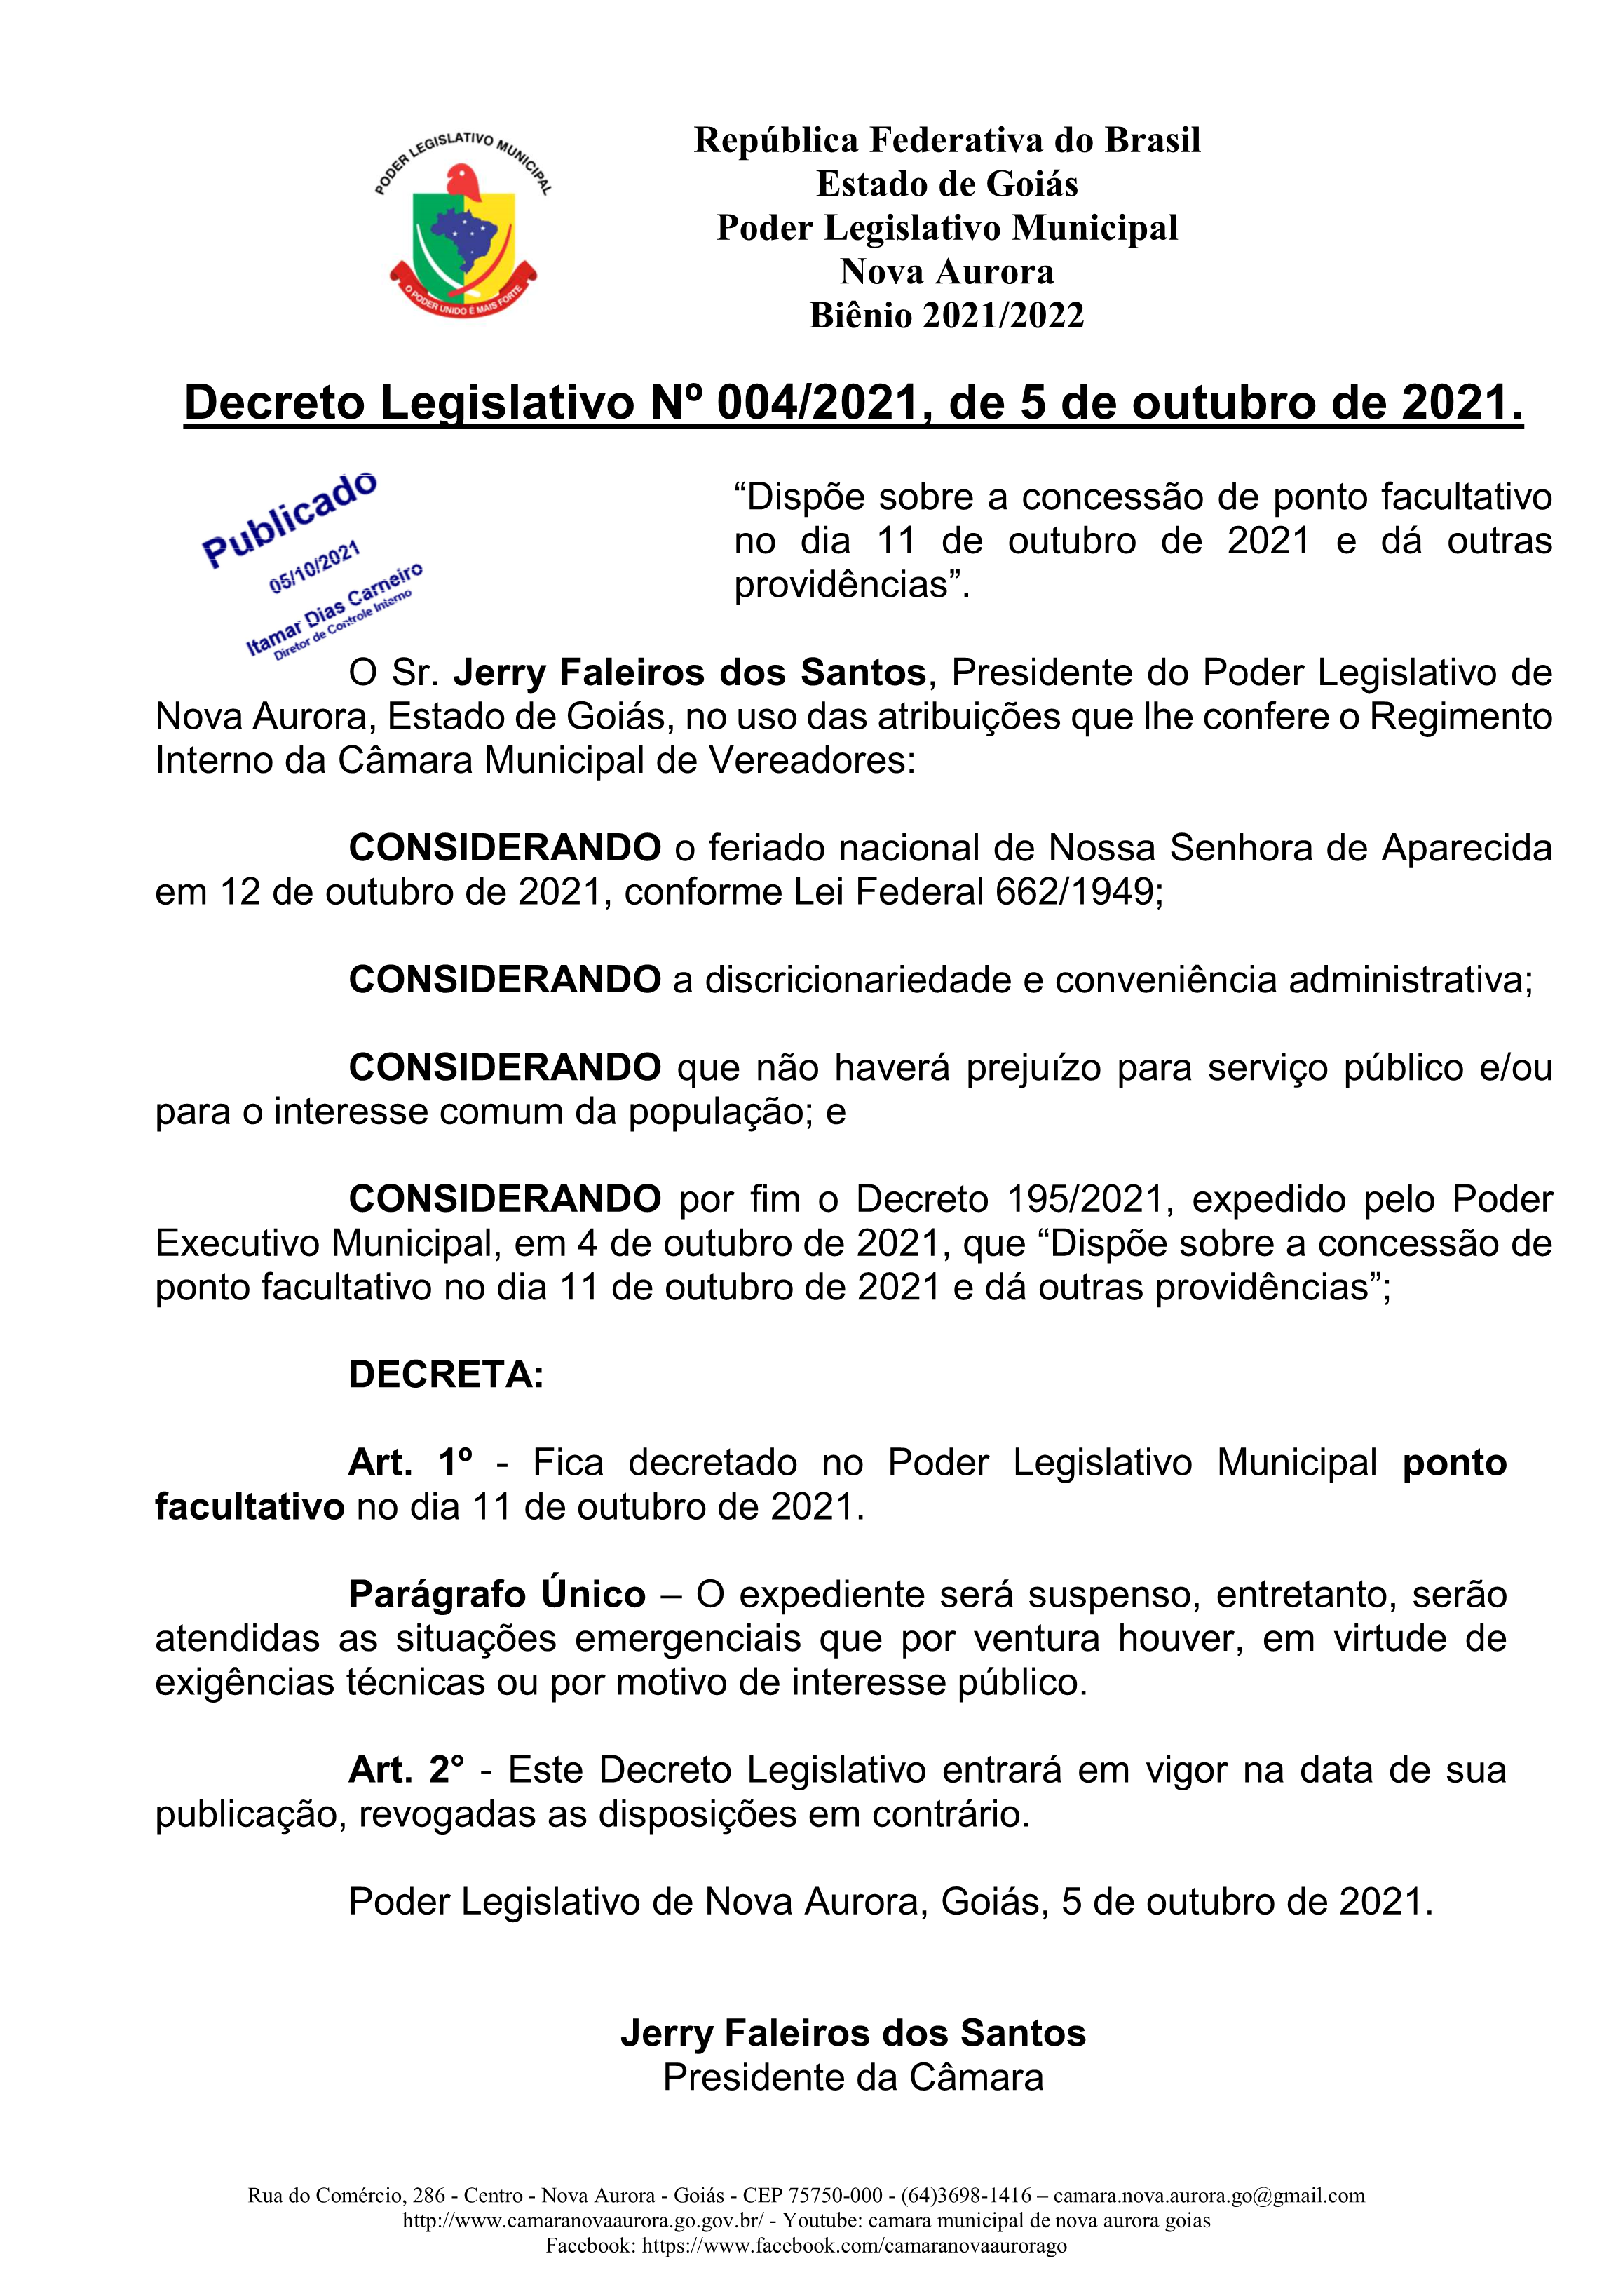 You are currently viewing Decreto Legislativo 004-2021 – Concessão de ponto facultativo no dia 11 de outubro de 2021